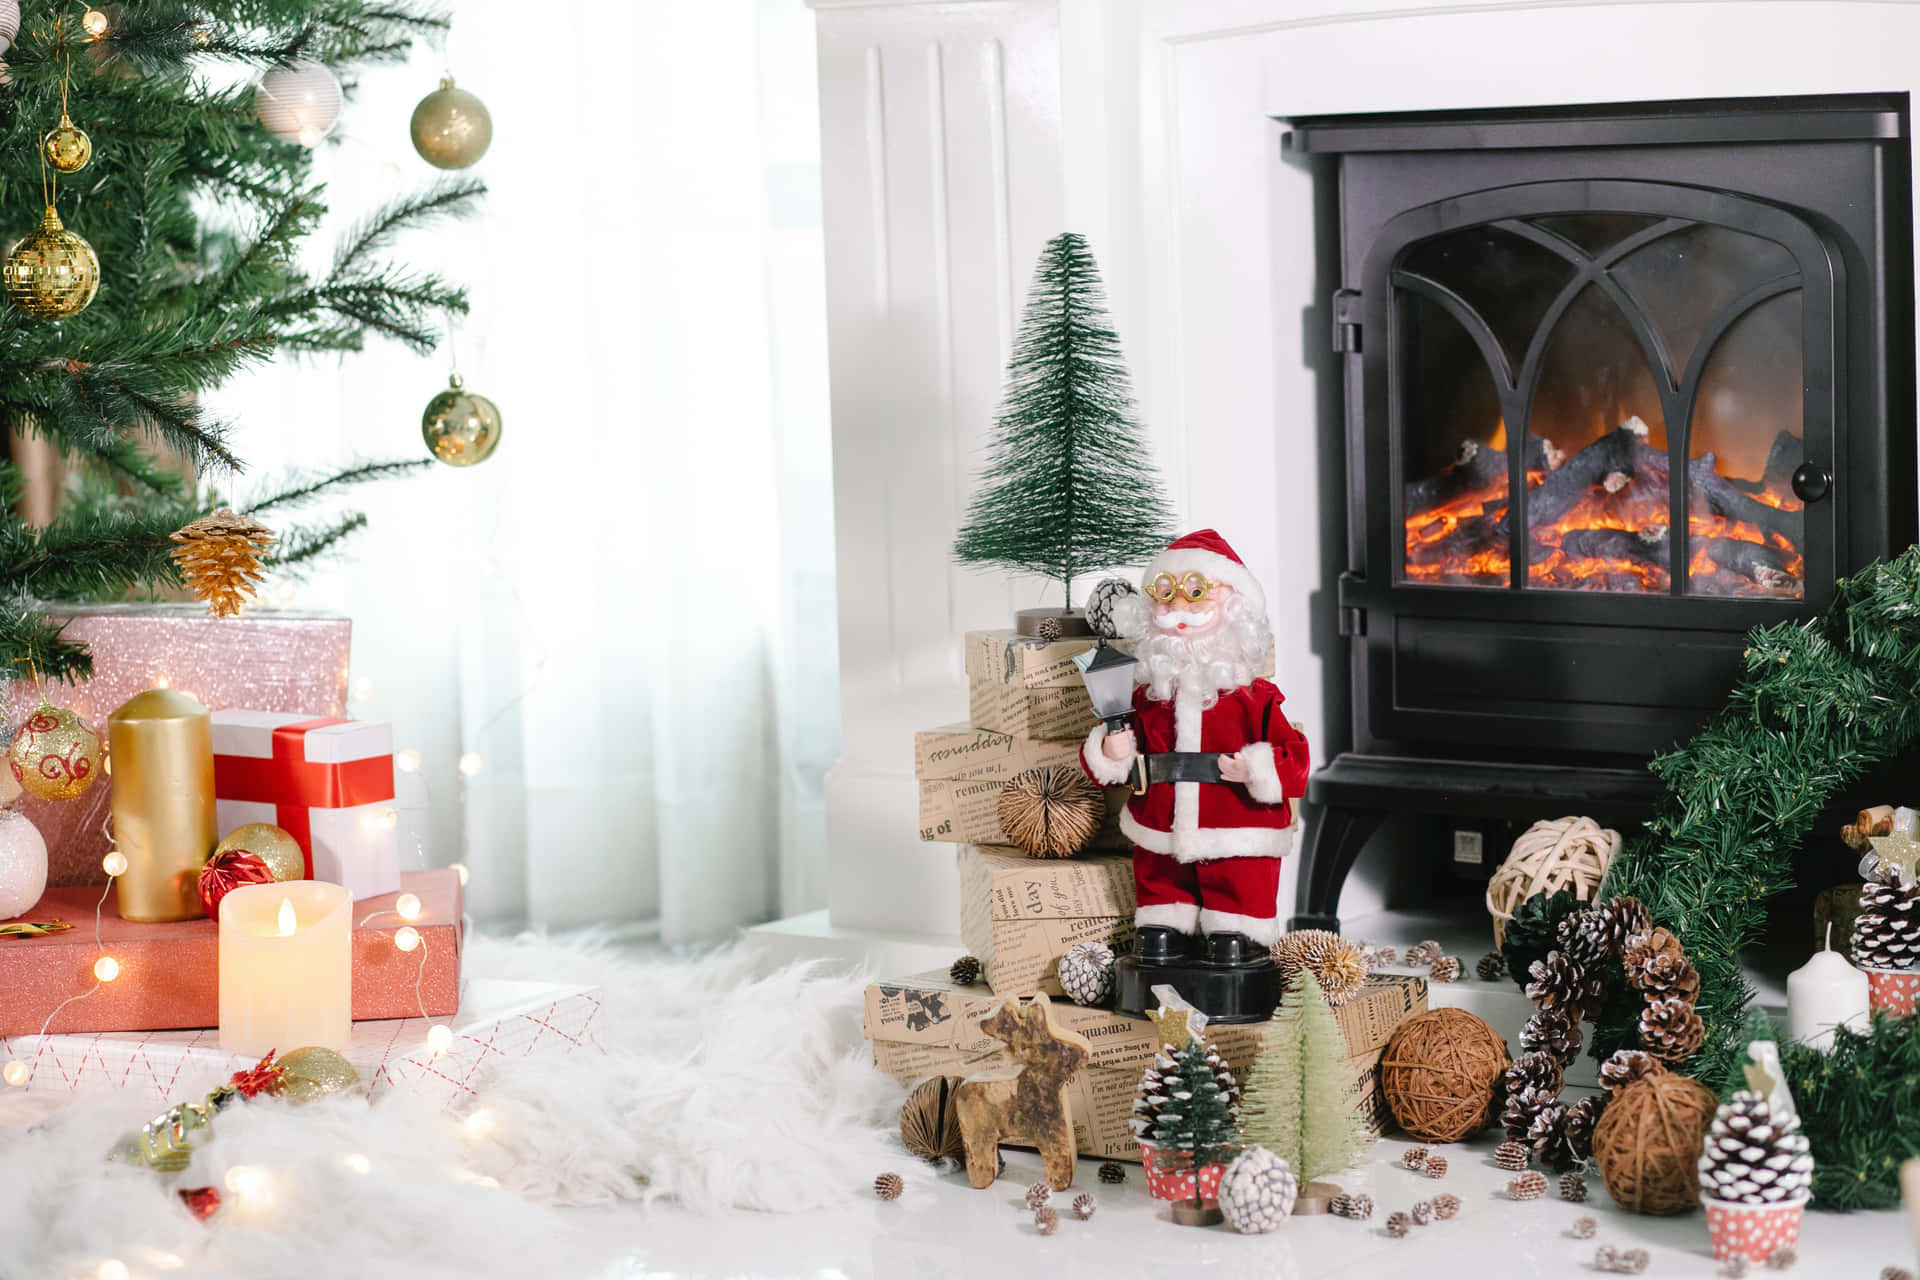 Billeder af Julemanden fra Nordpolen perfekt til ferien.